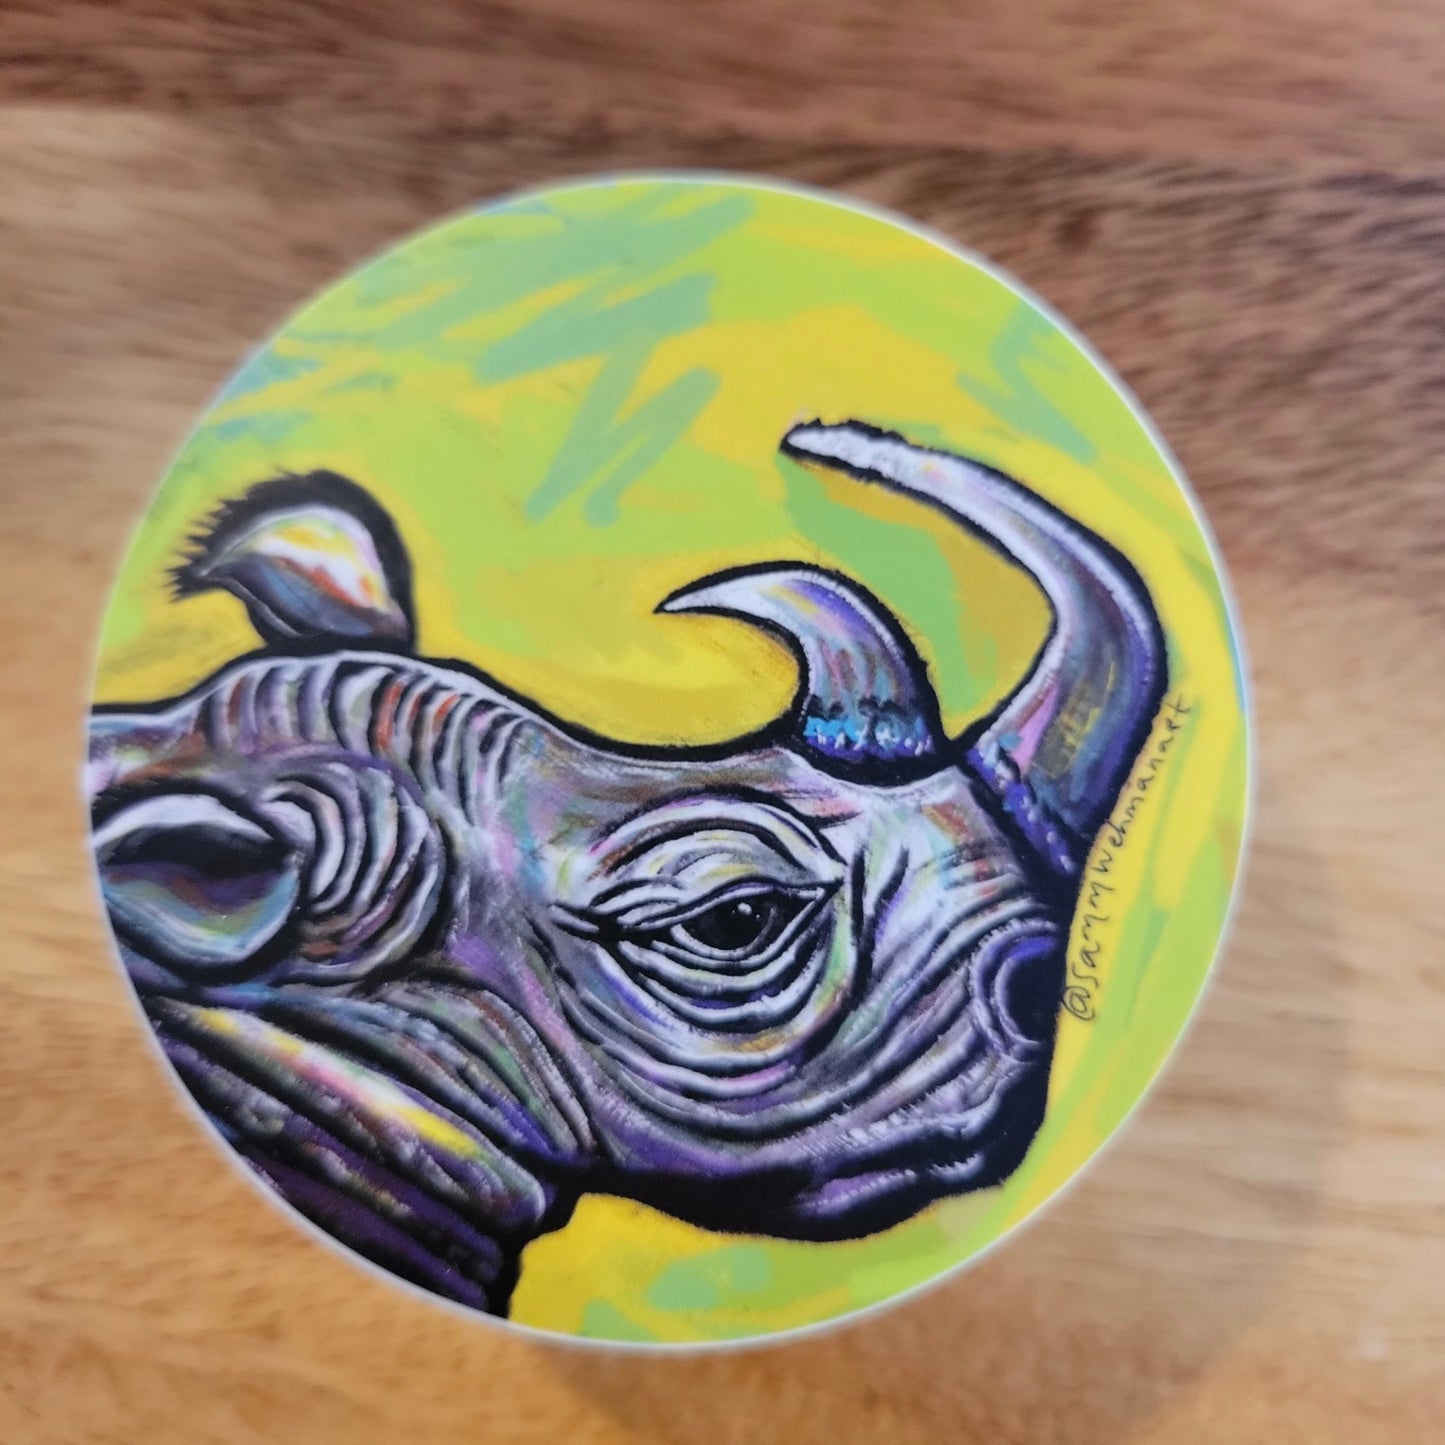 Rhino by Samm